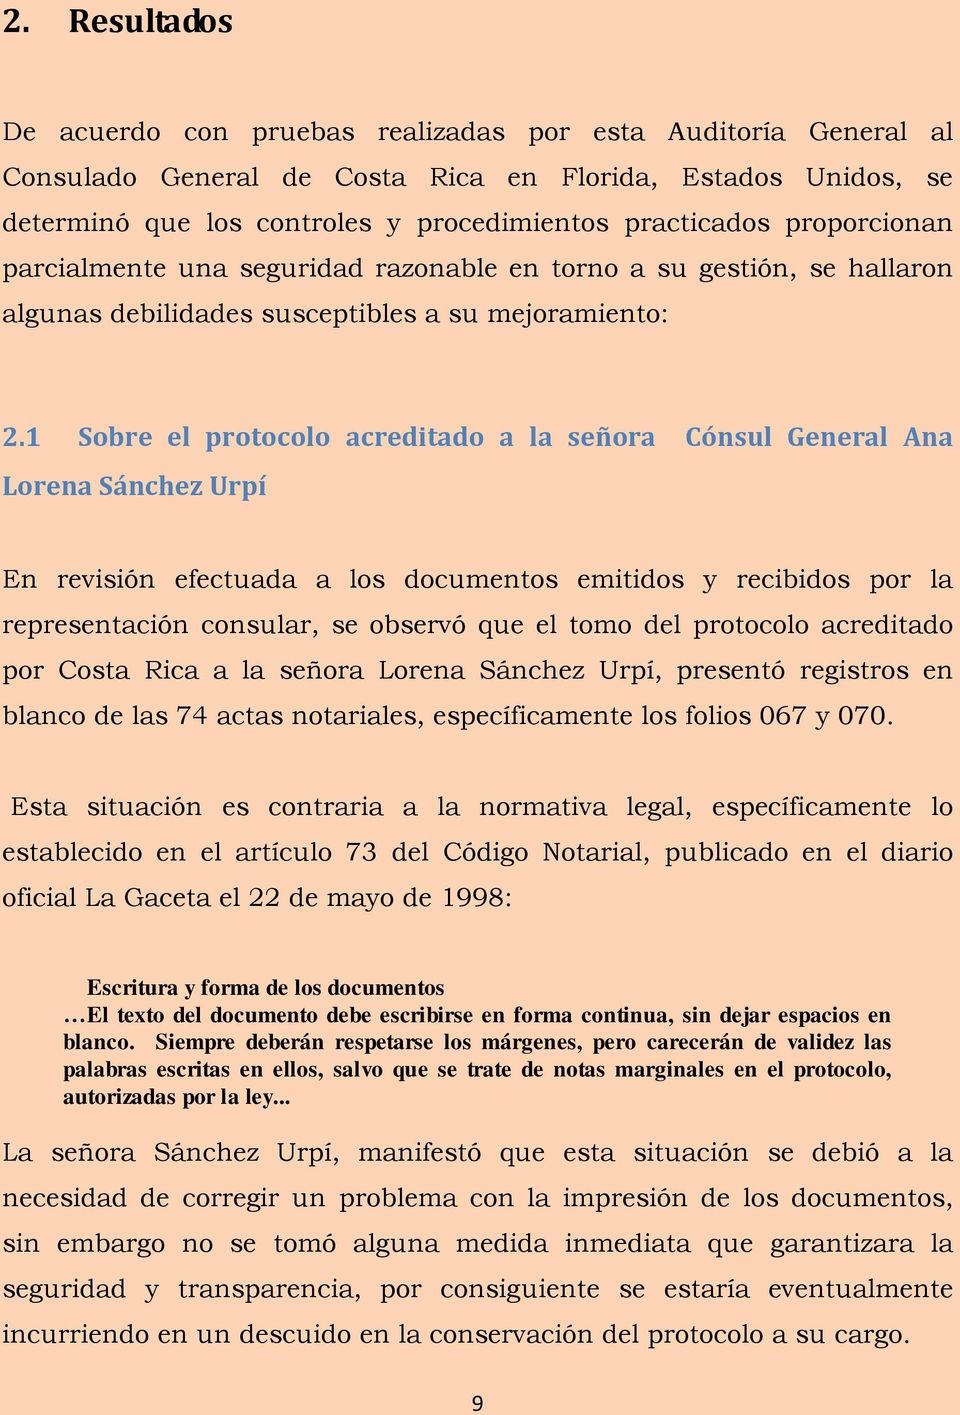 1 Sobre el protocolo acreditado a la señora Cónsul General Ana Lorena Sánchez Urpí En revisión efectuada a los documentos emitidos y recibidos por la representación consular, se observó que el tomo